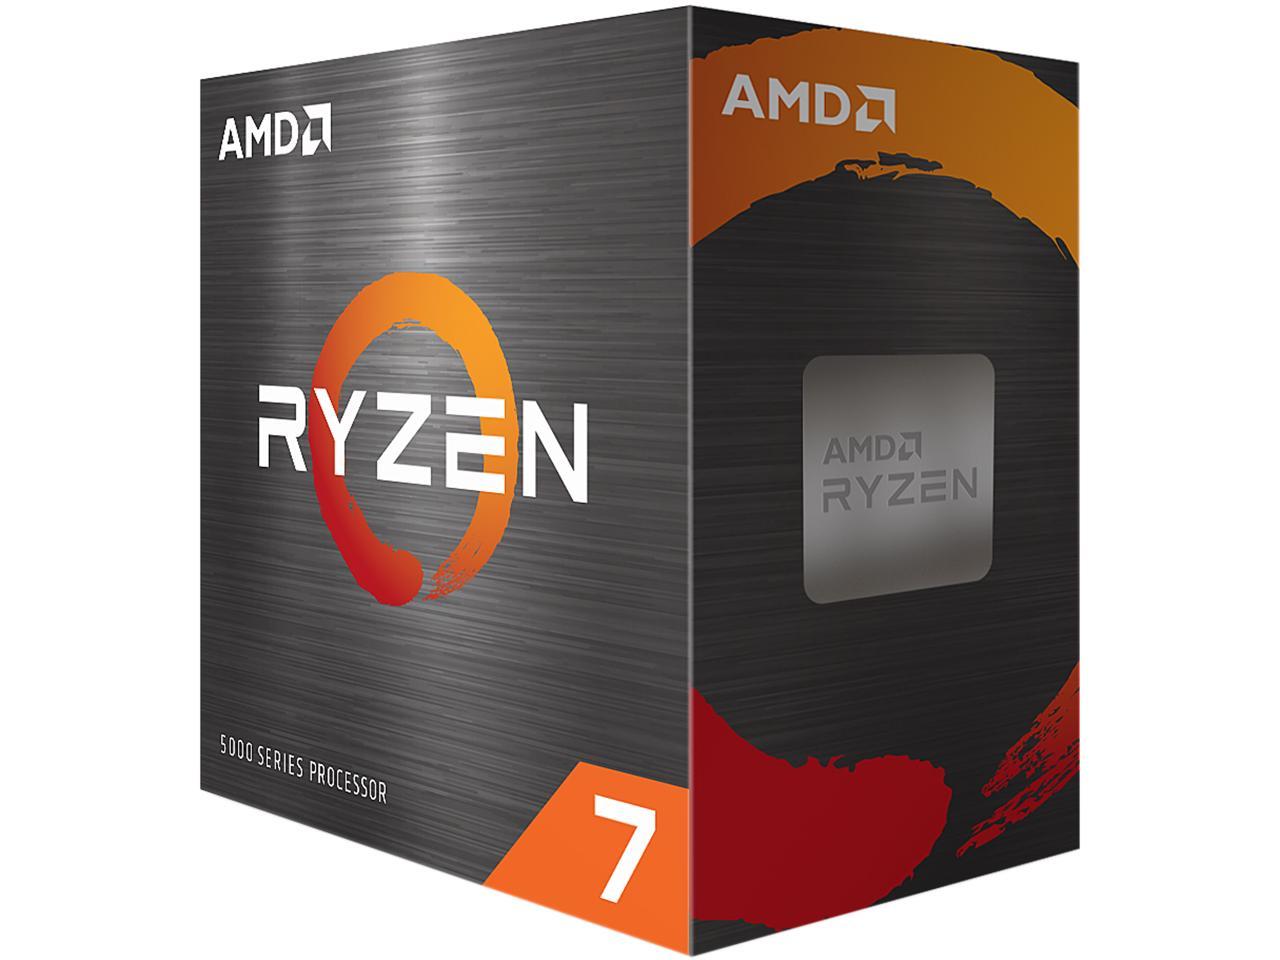 AMD Ryzen 7 5800X 3.8 GHz 8-Core Socket AM4 CPU + Free Shipping $226.99